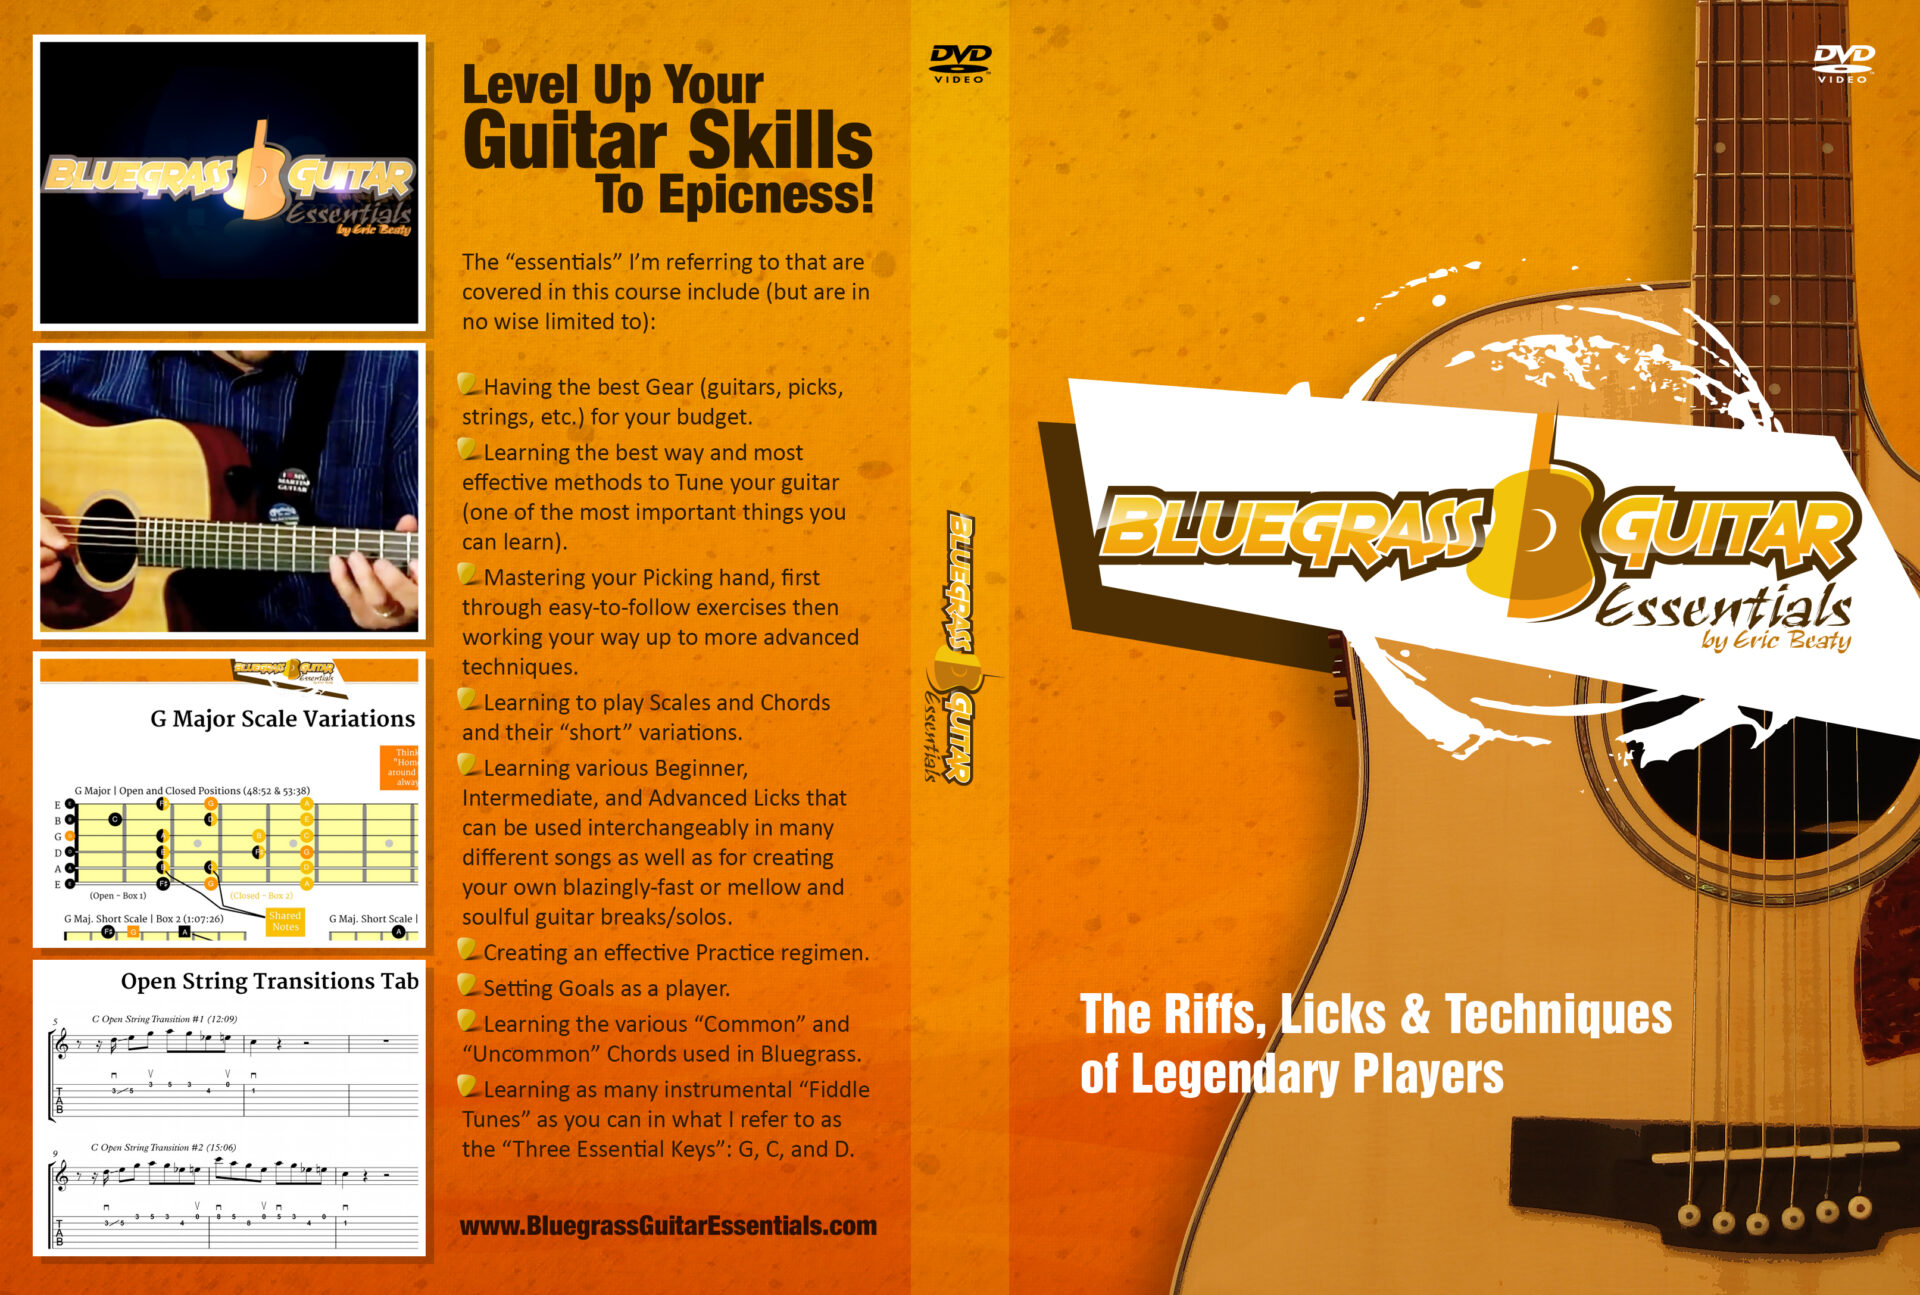 Bluegrass Guitar Essentials DVD cover wrap